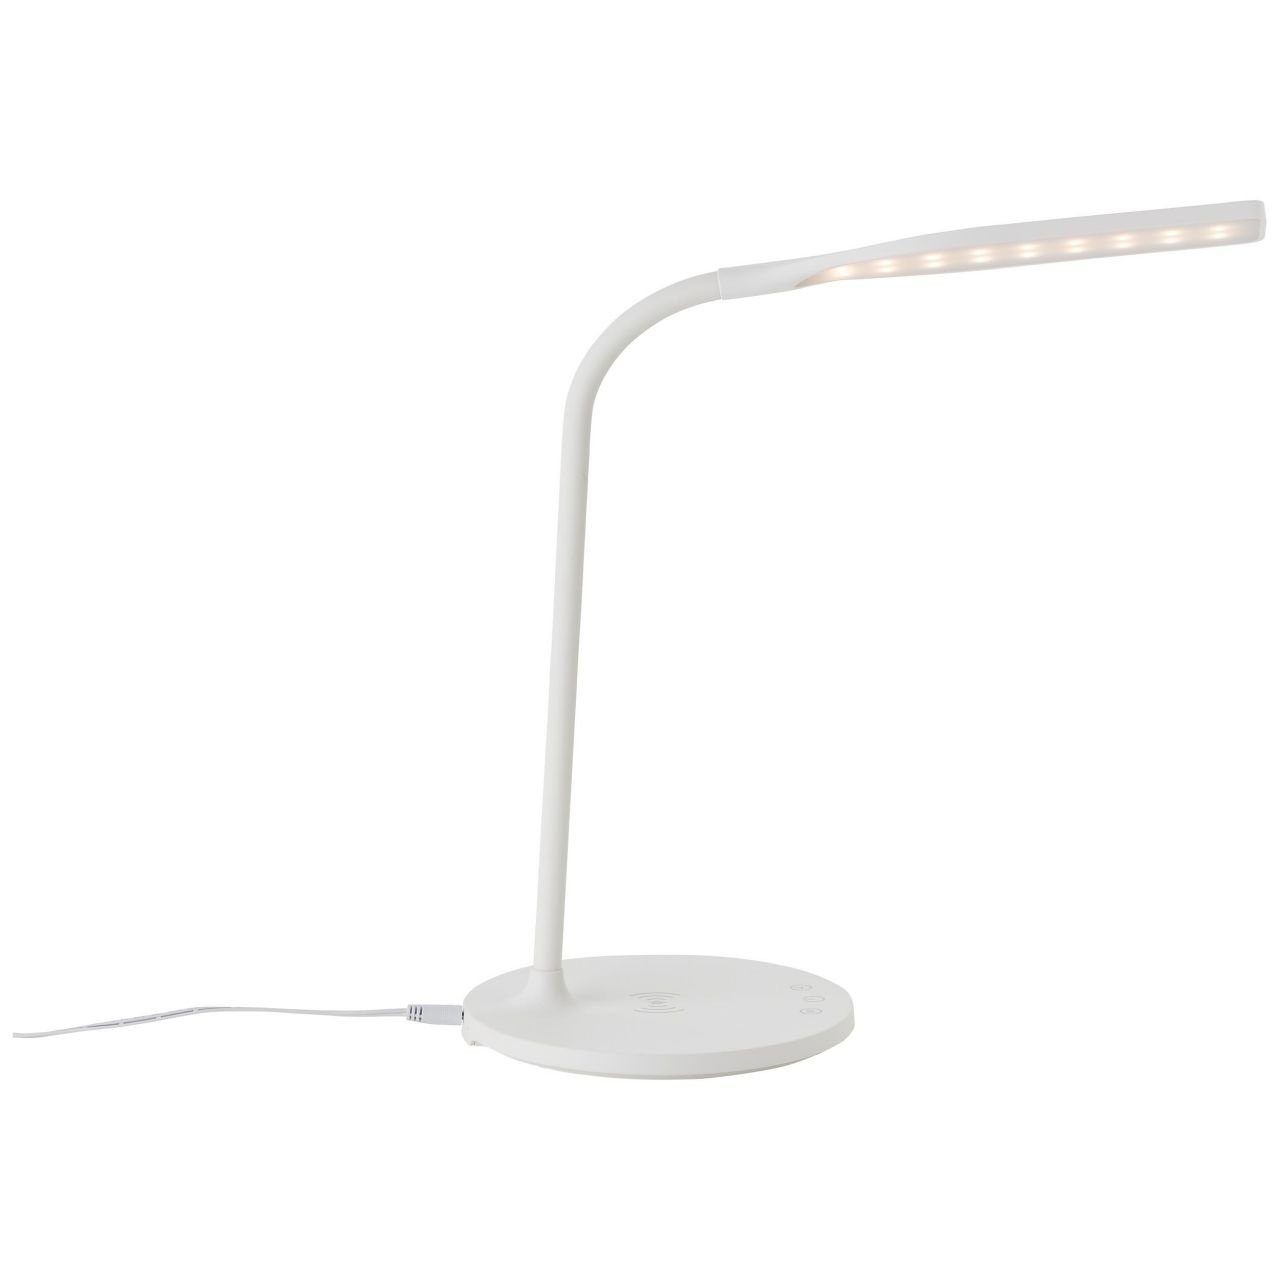 Brilliant Tischleuchte Joni, int weiß, Lampe, Joni 3000-5400K, LED 1x Tischleuchte mit Induktionsladeschale LED